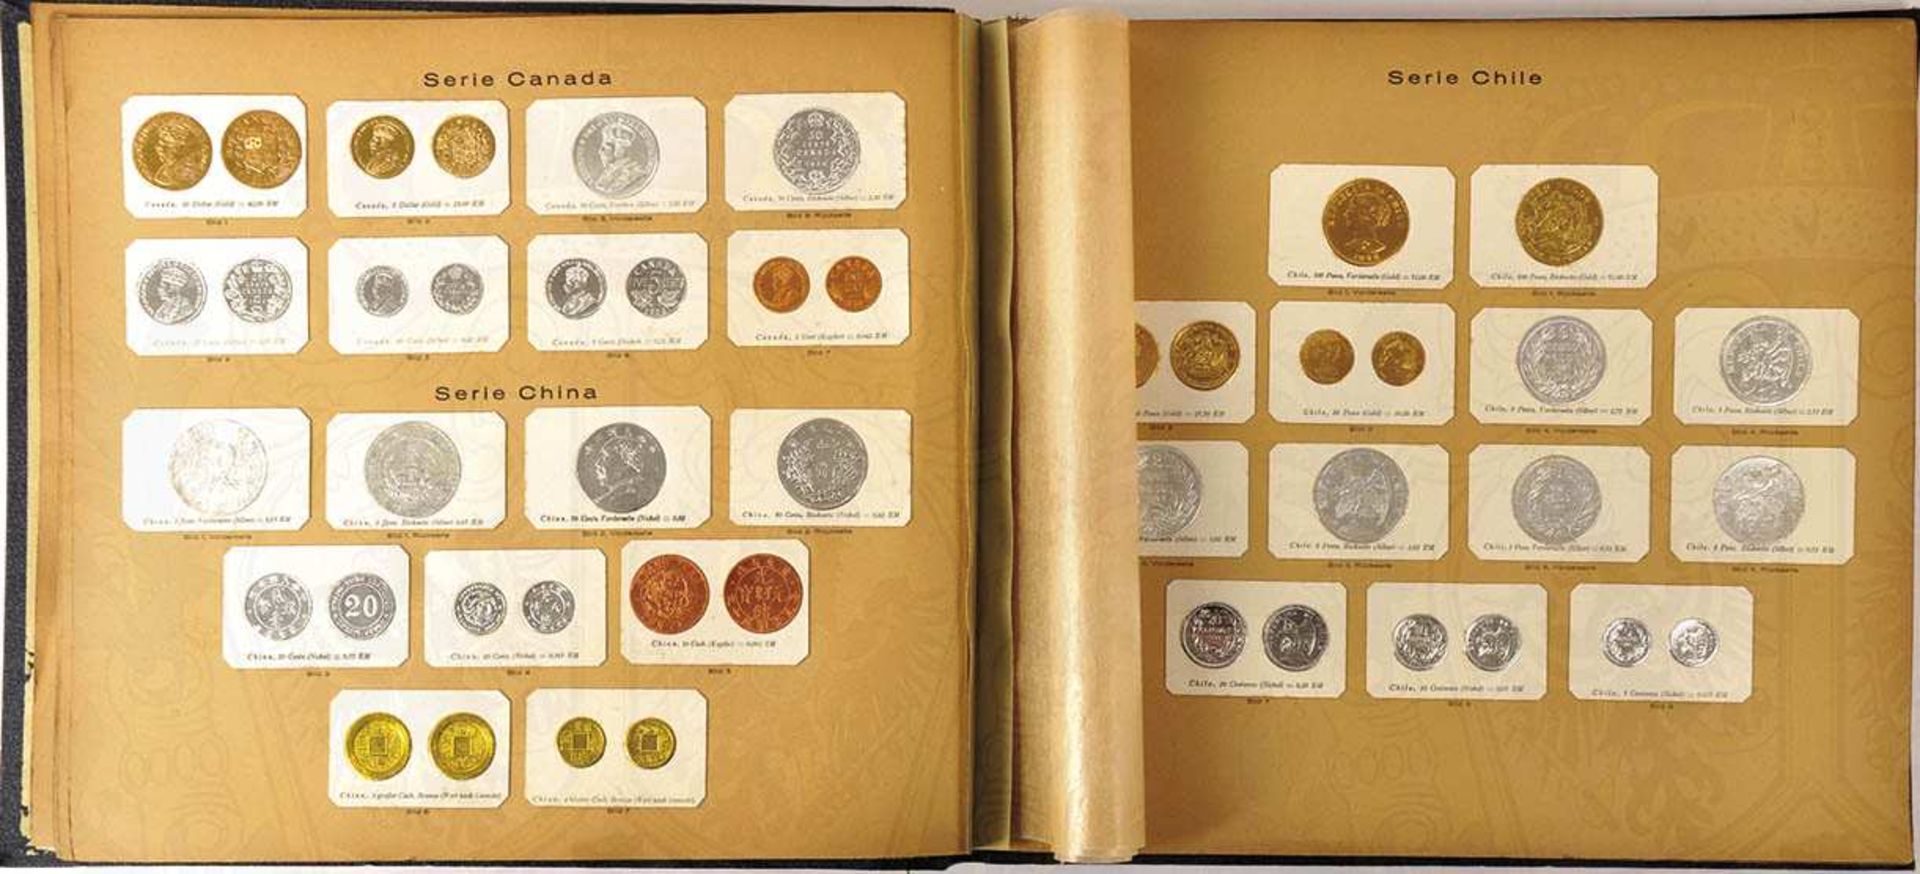 GREILINGS MÜNZ-SAMMLUNG "Die kuranten Münzen aller Staaten der Erde", Dresden 1929, 130. Tsd., 529